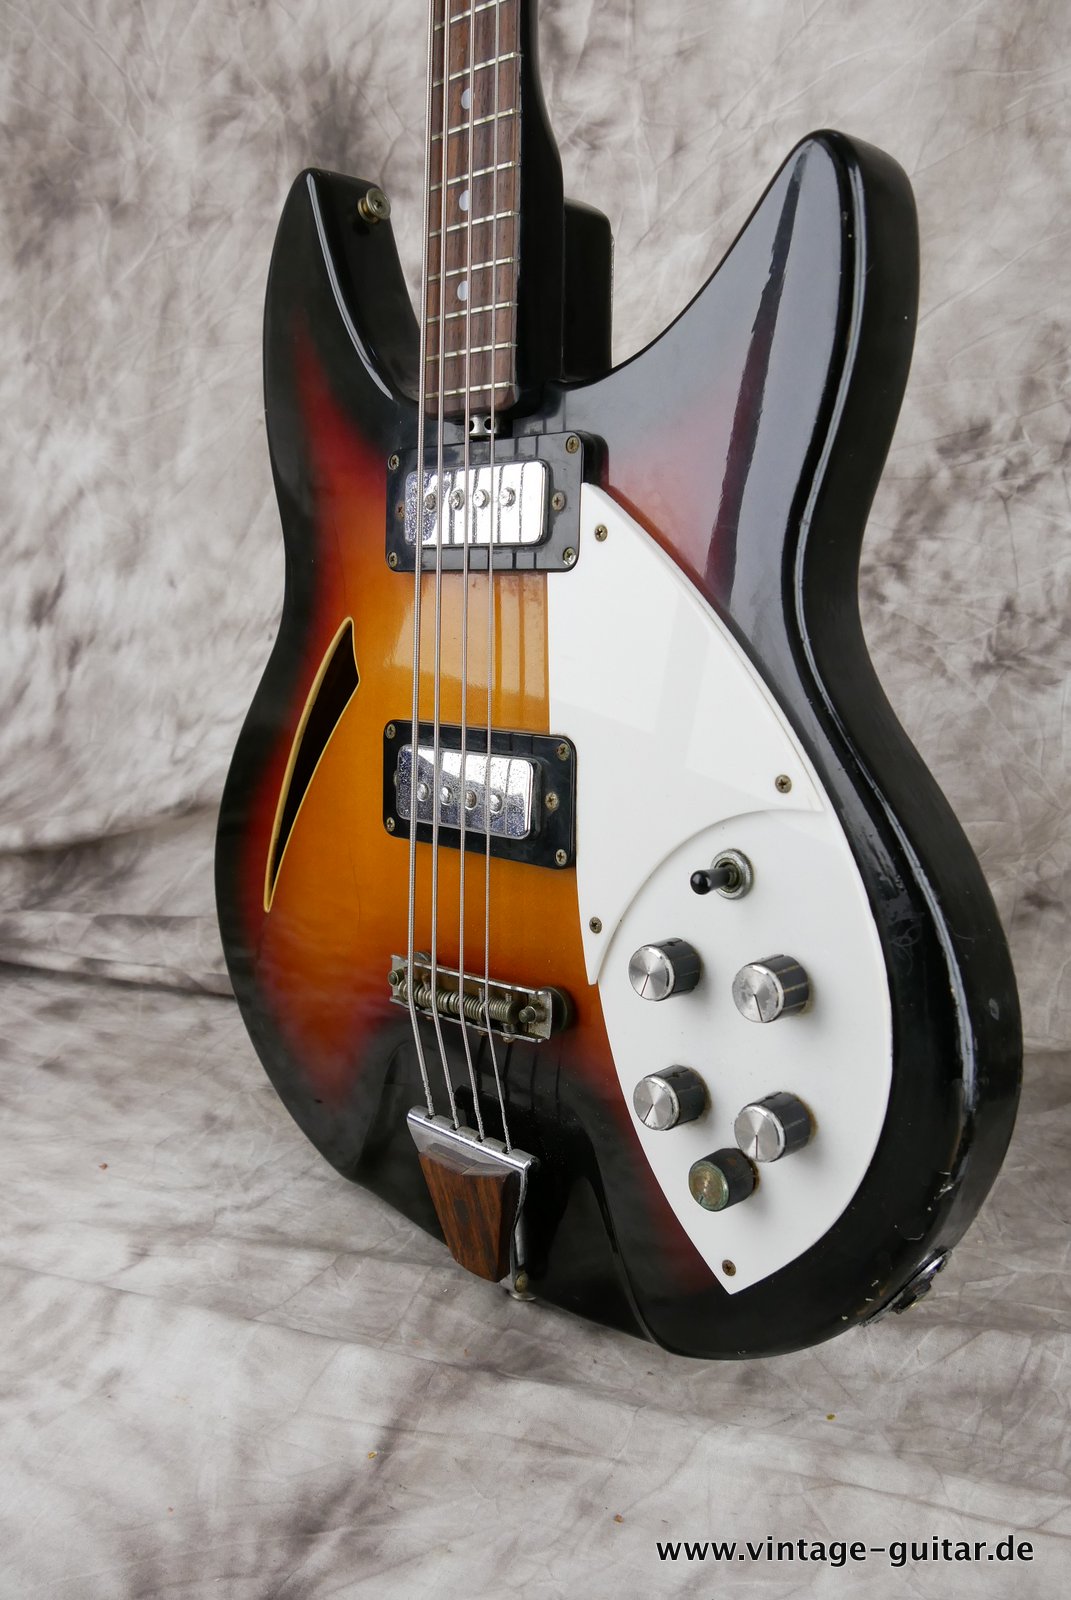 Shaftesbury-Bass-3263-1969-Italy-Eko-made-009.JPG